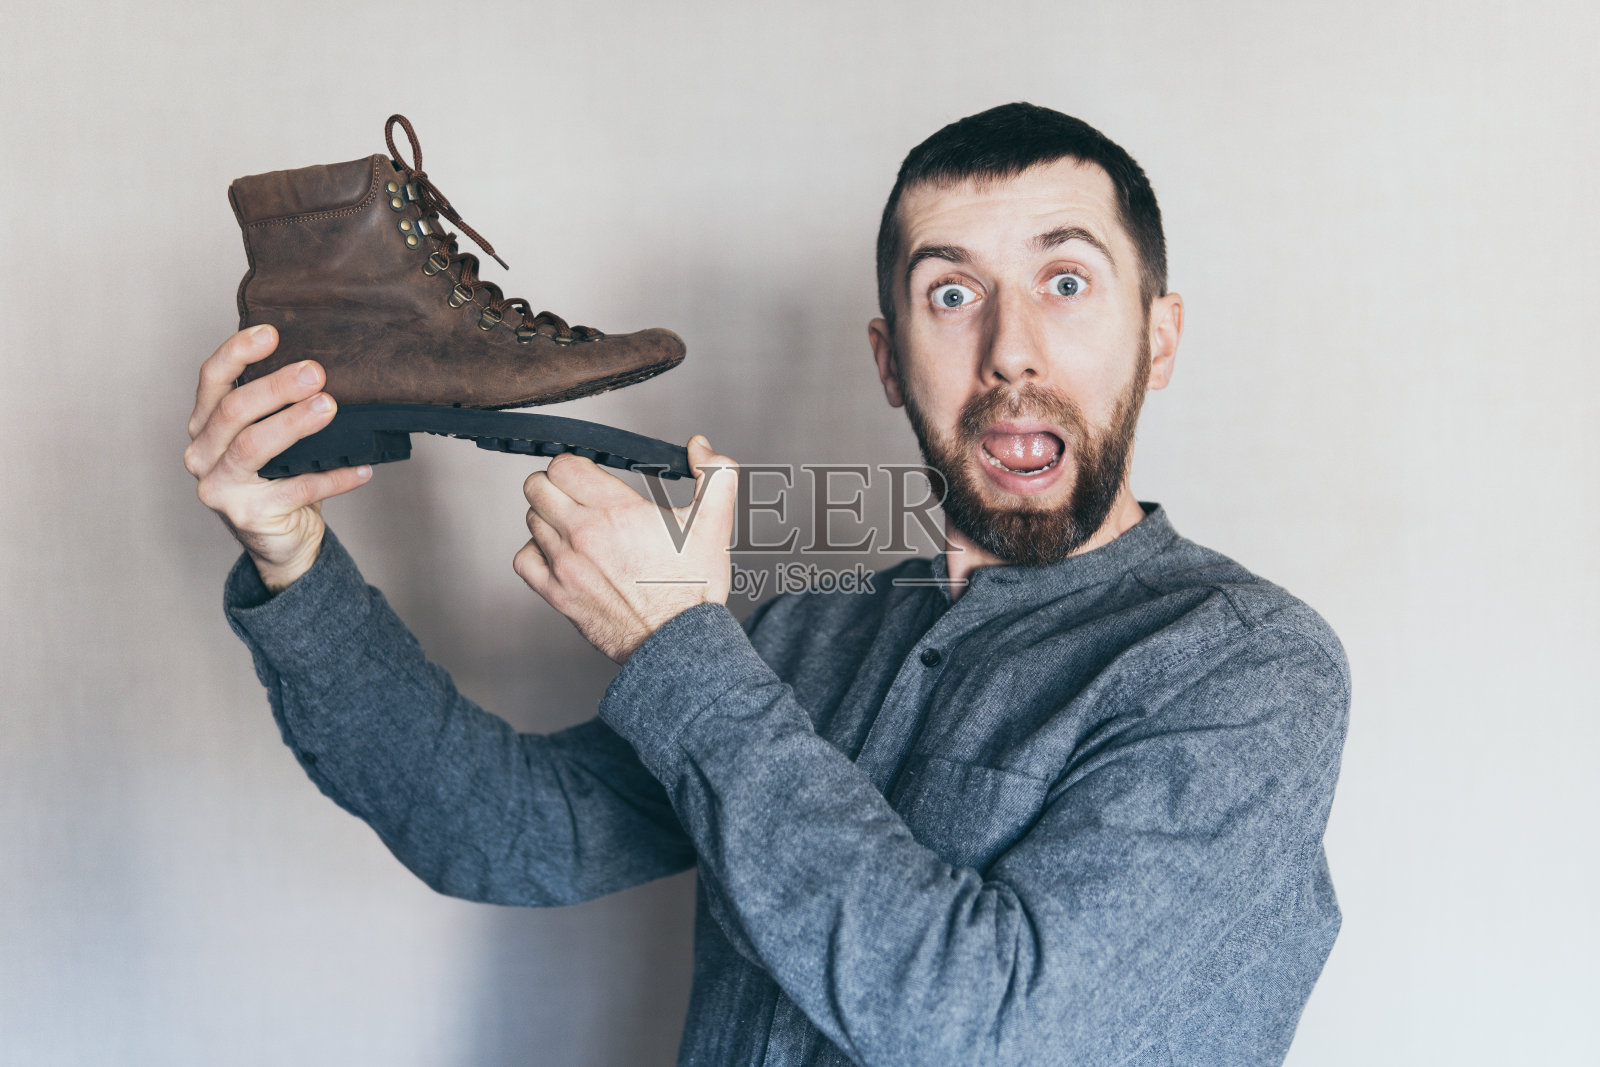 一个人拿着一只鞋底破了的旧皮靴，脸上露出惊讶和震惊的表情照片摄影图片